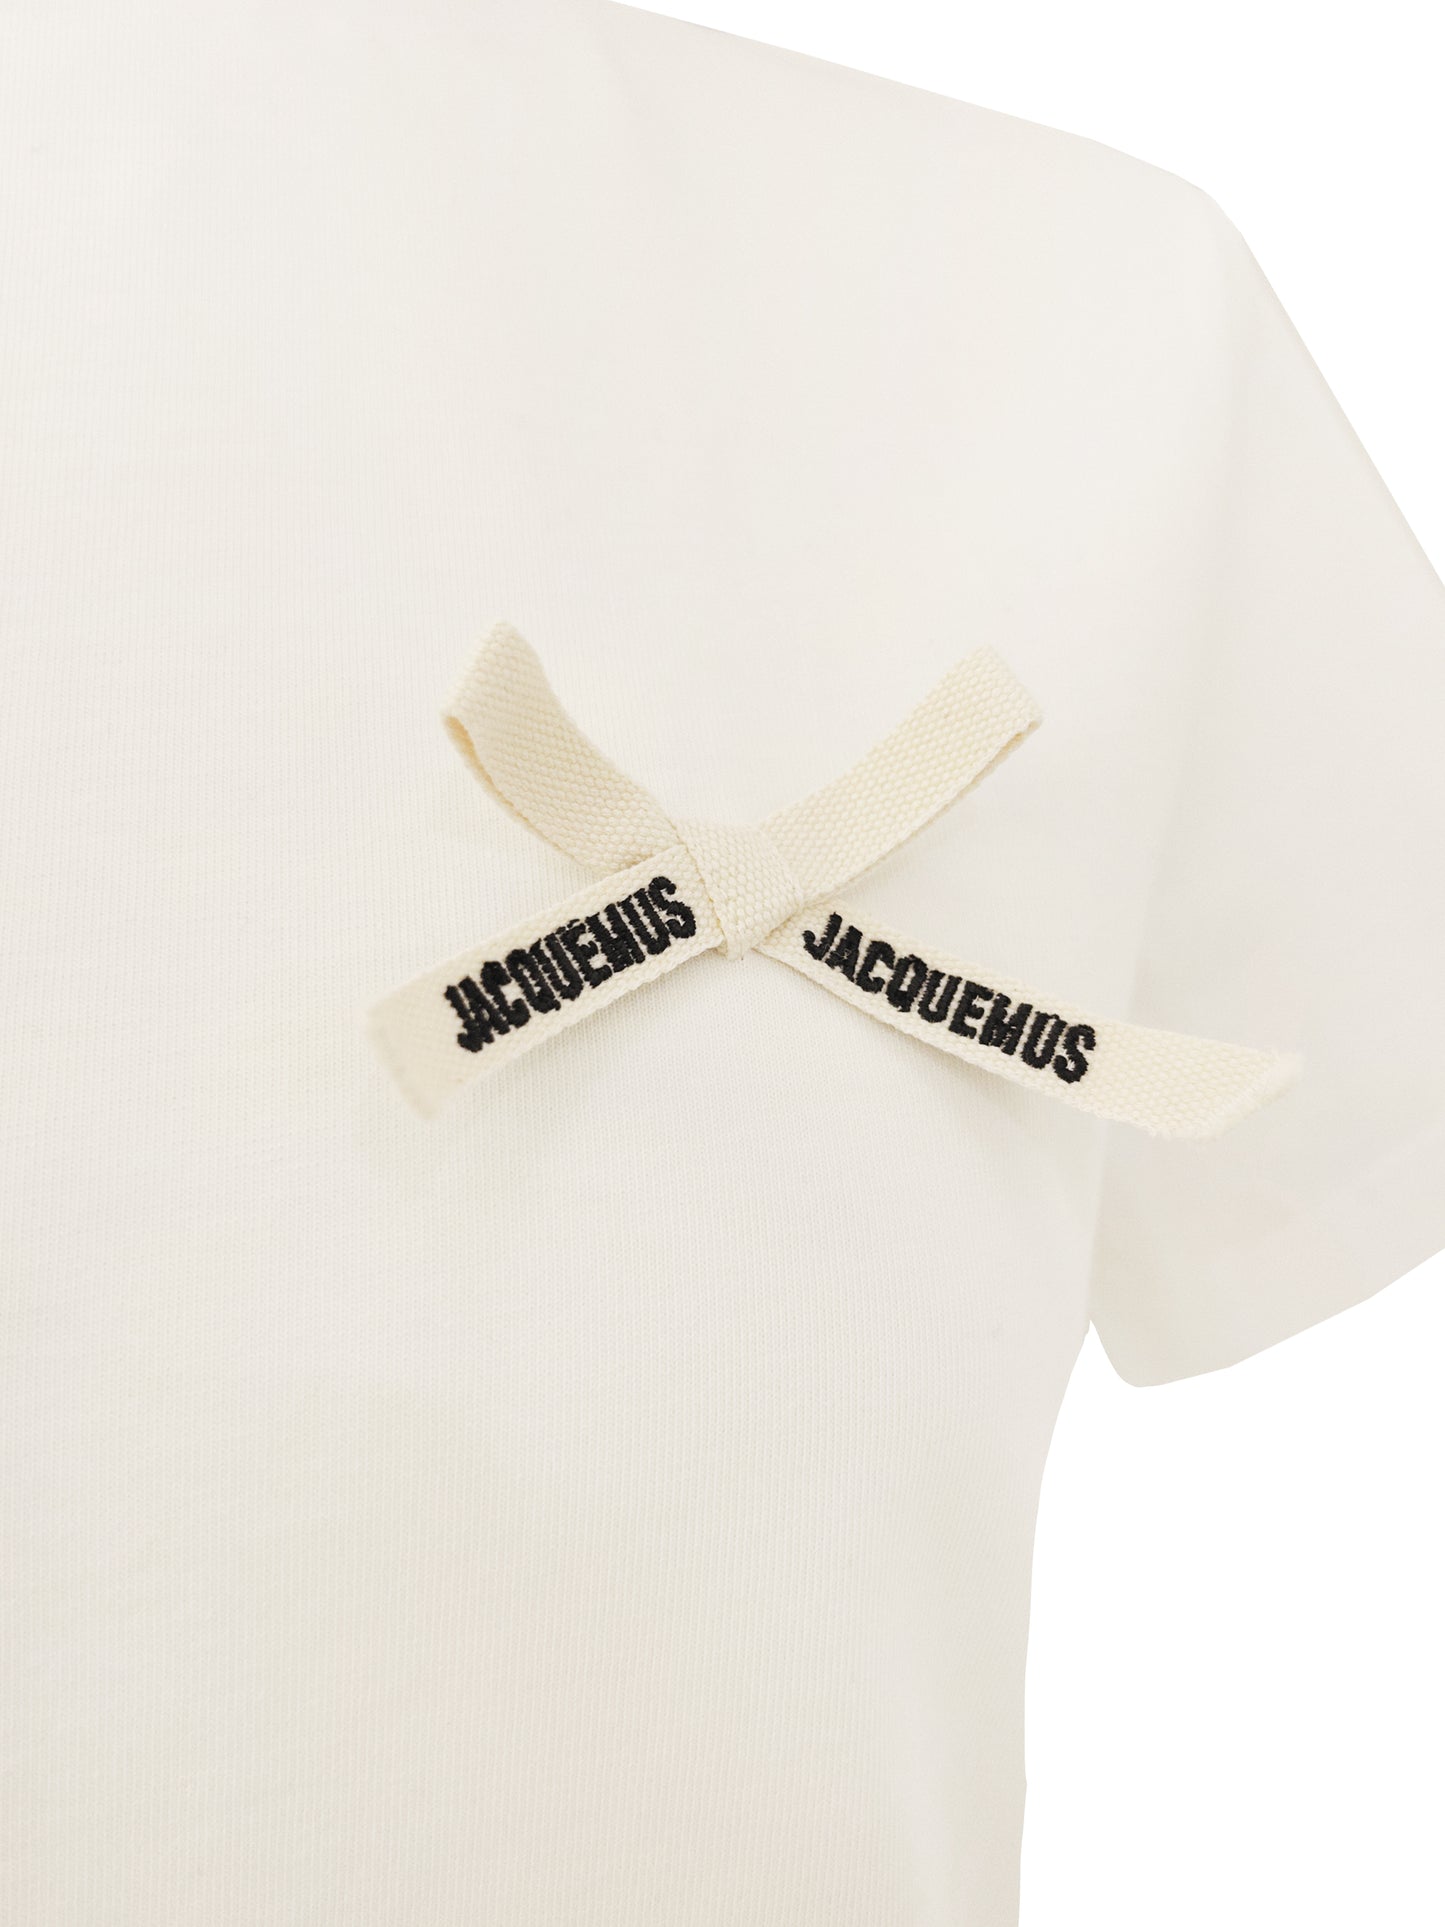 Jacquemus T-Shirt Weiss